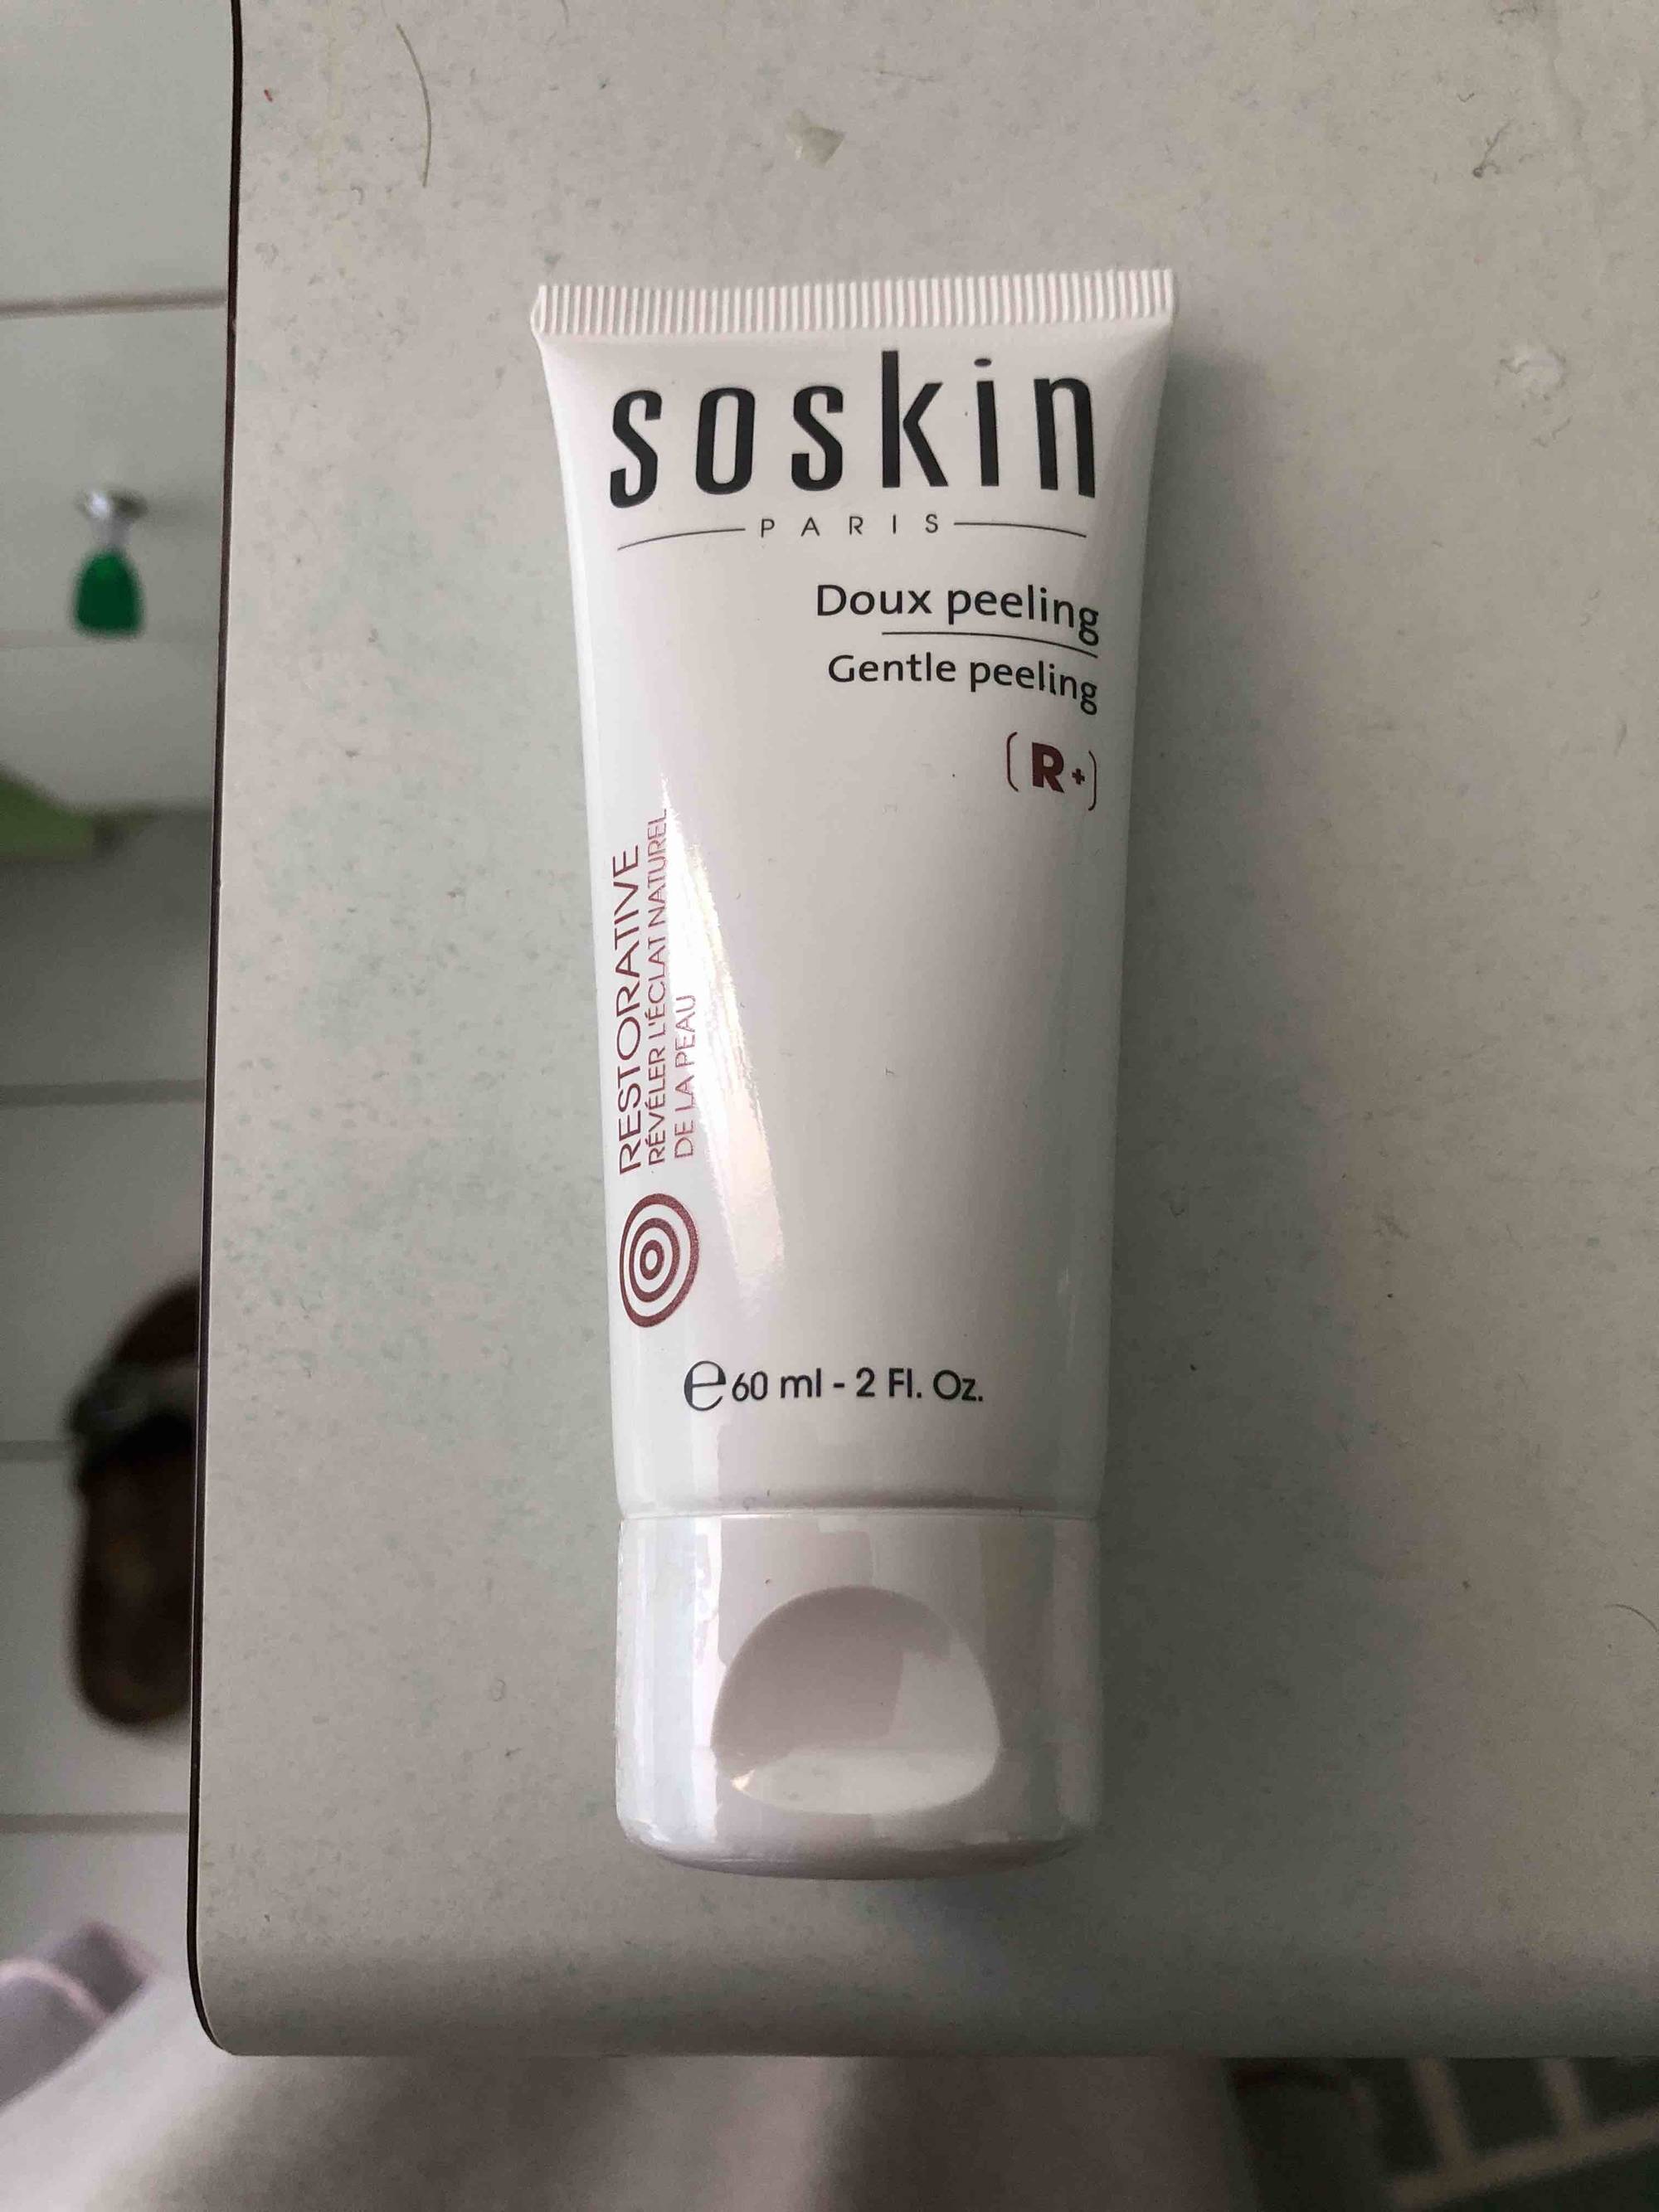 SOSKIN - Doux peeling R+